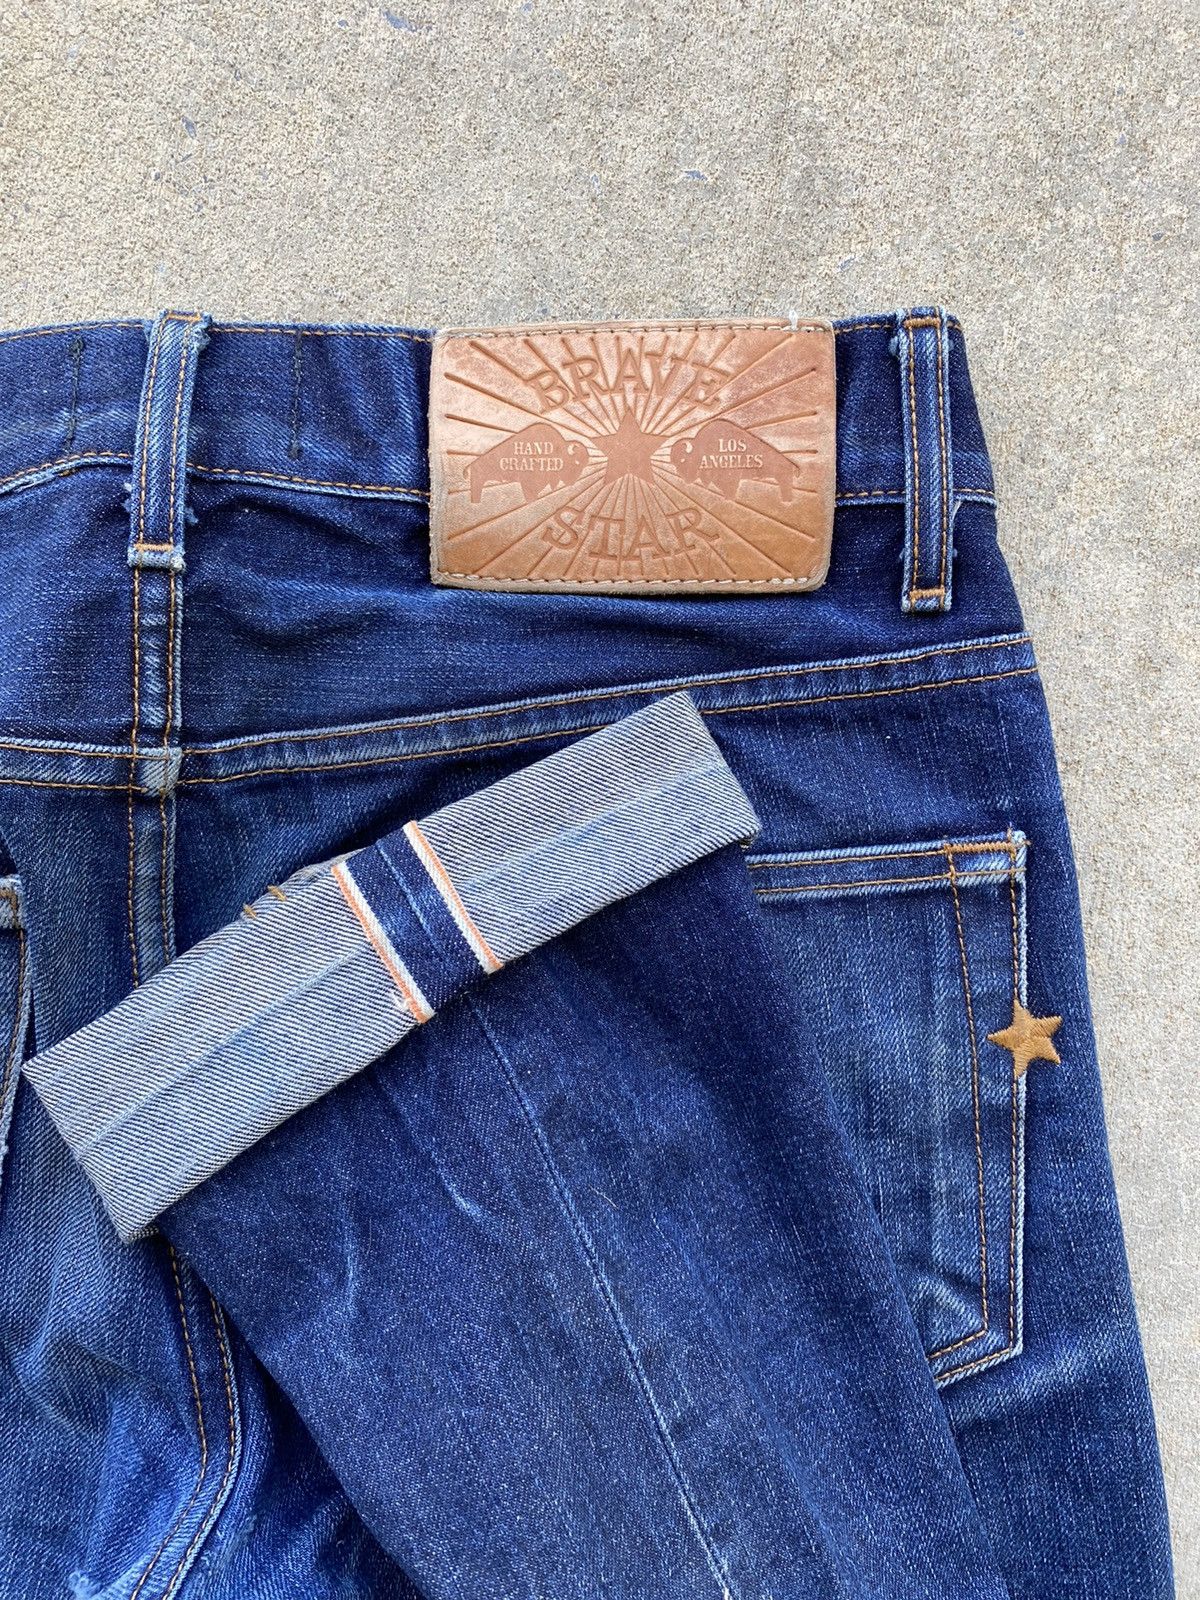 Vintage Vintage Brave Star Selvedge Denim Jeans 30 x 30 | Grailed